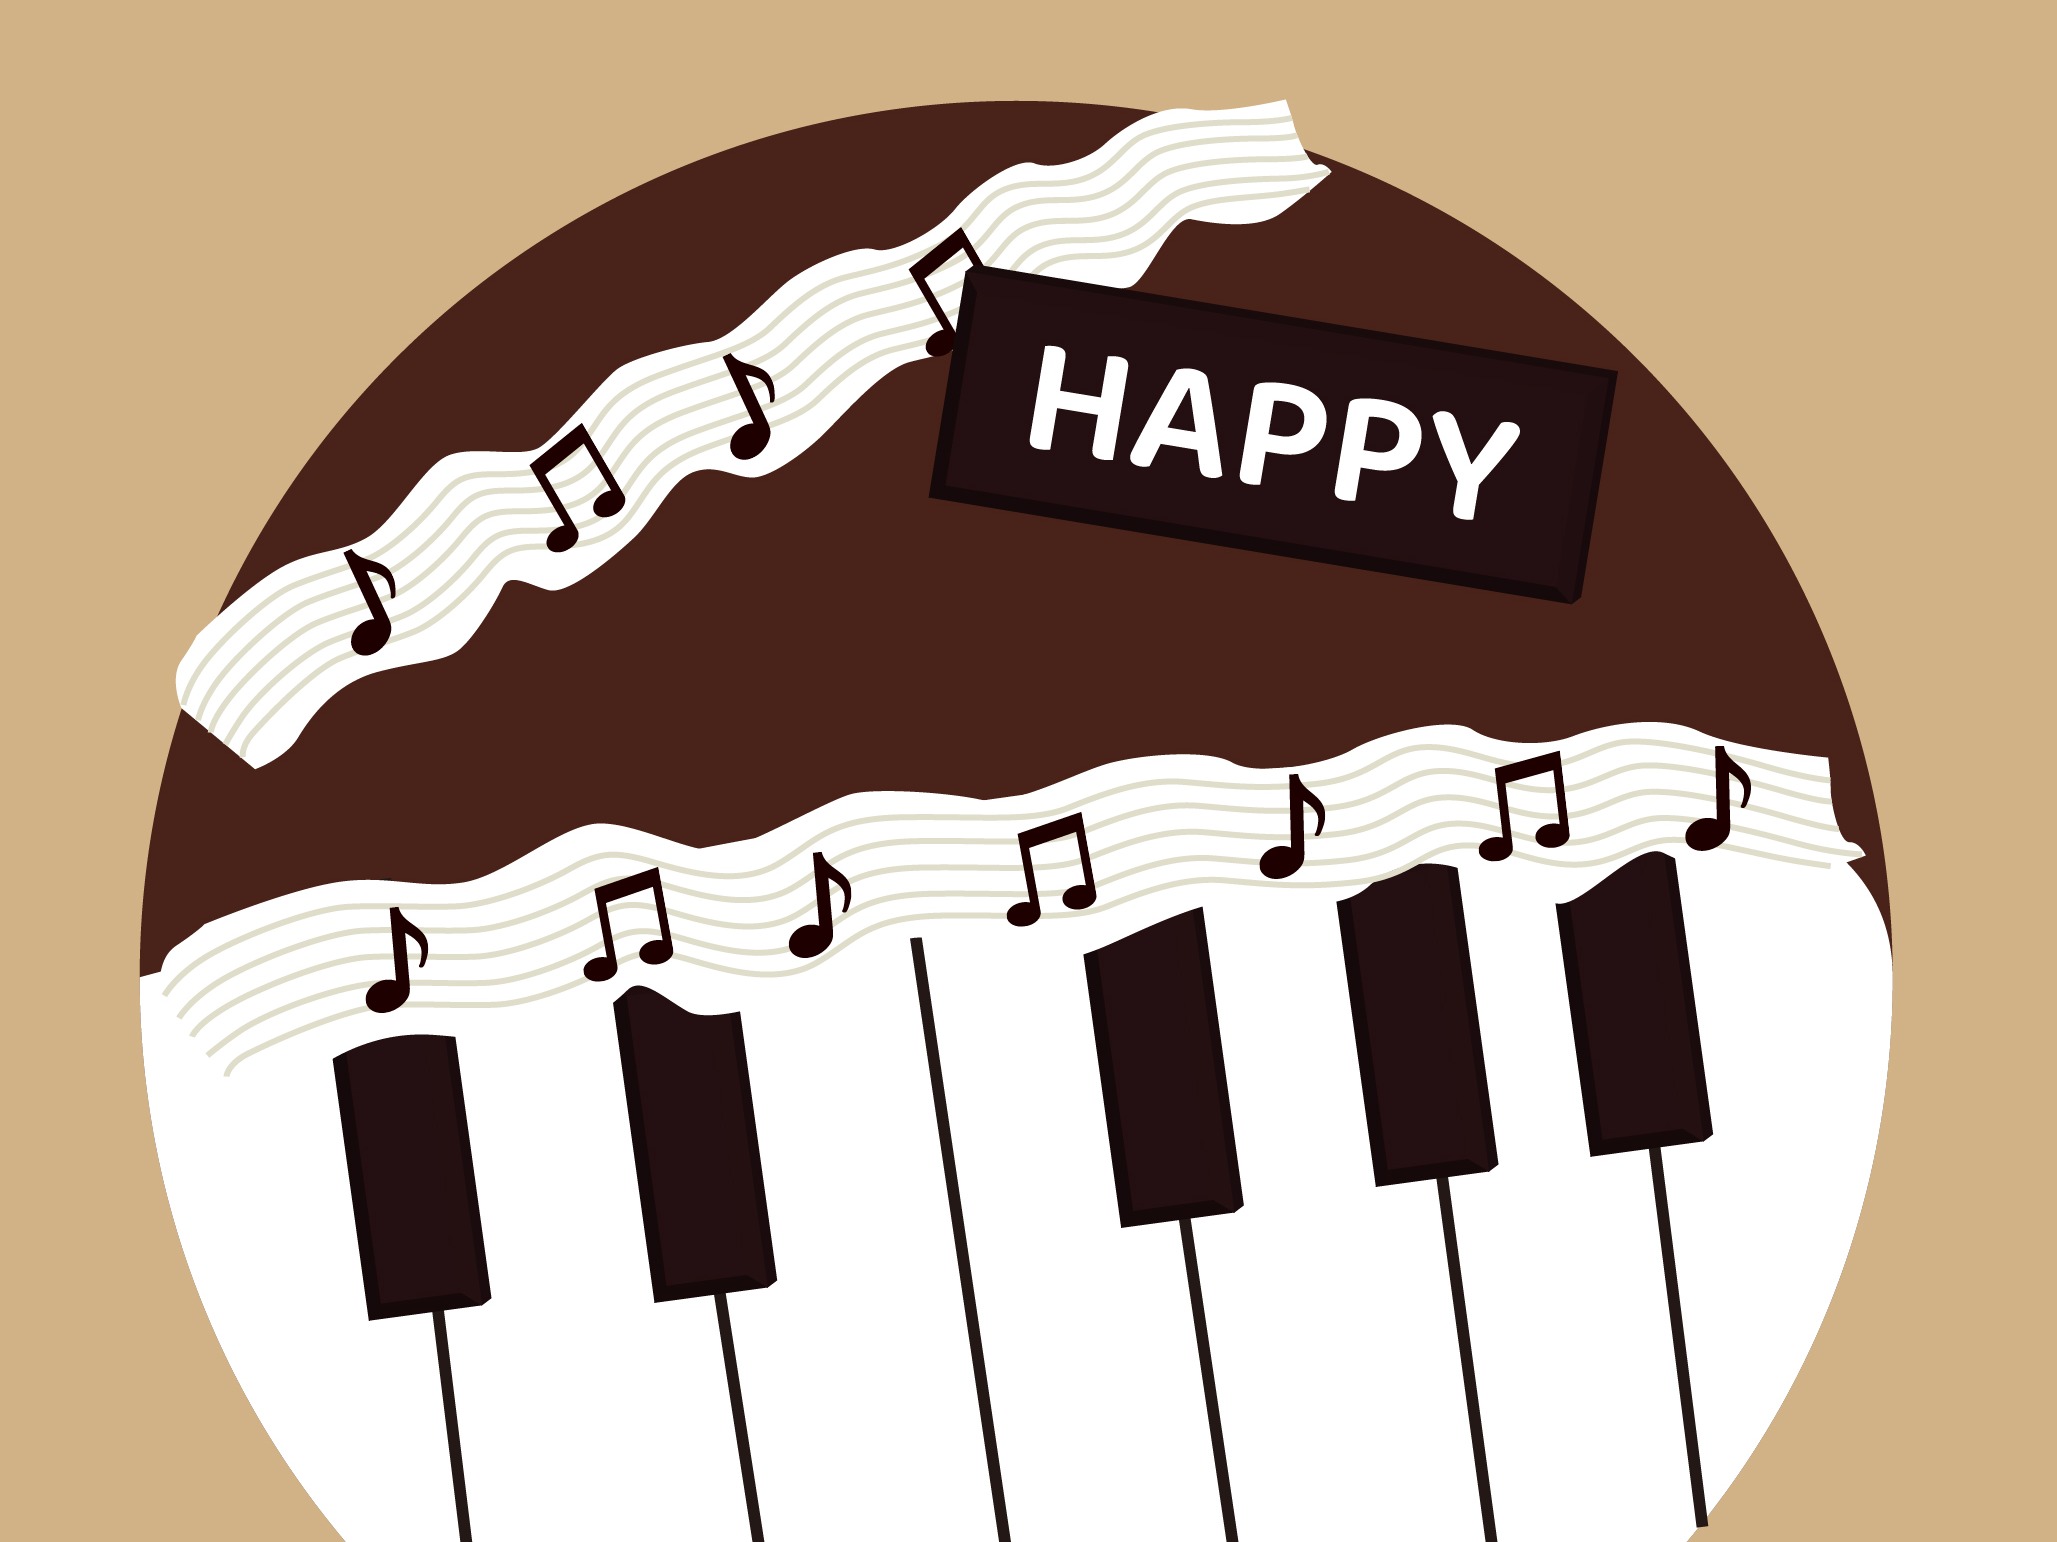 钢琴生日蛋糕 库存照片. 图片 包括有 装饰, 巧克力, 欢乐, 奶油, 生日, 关键字, 创造性, 背包 - 112333062